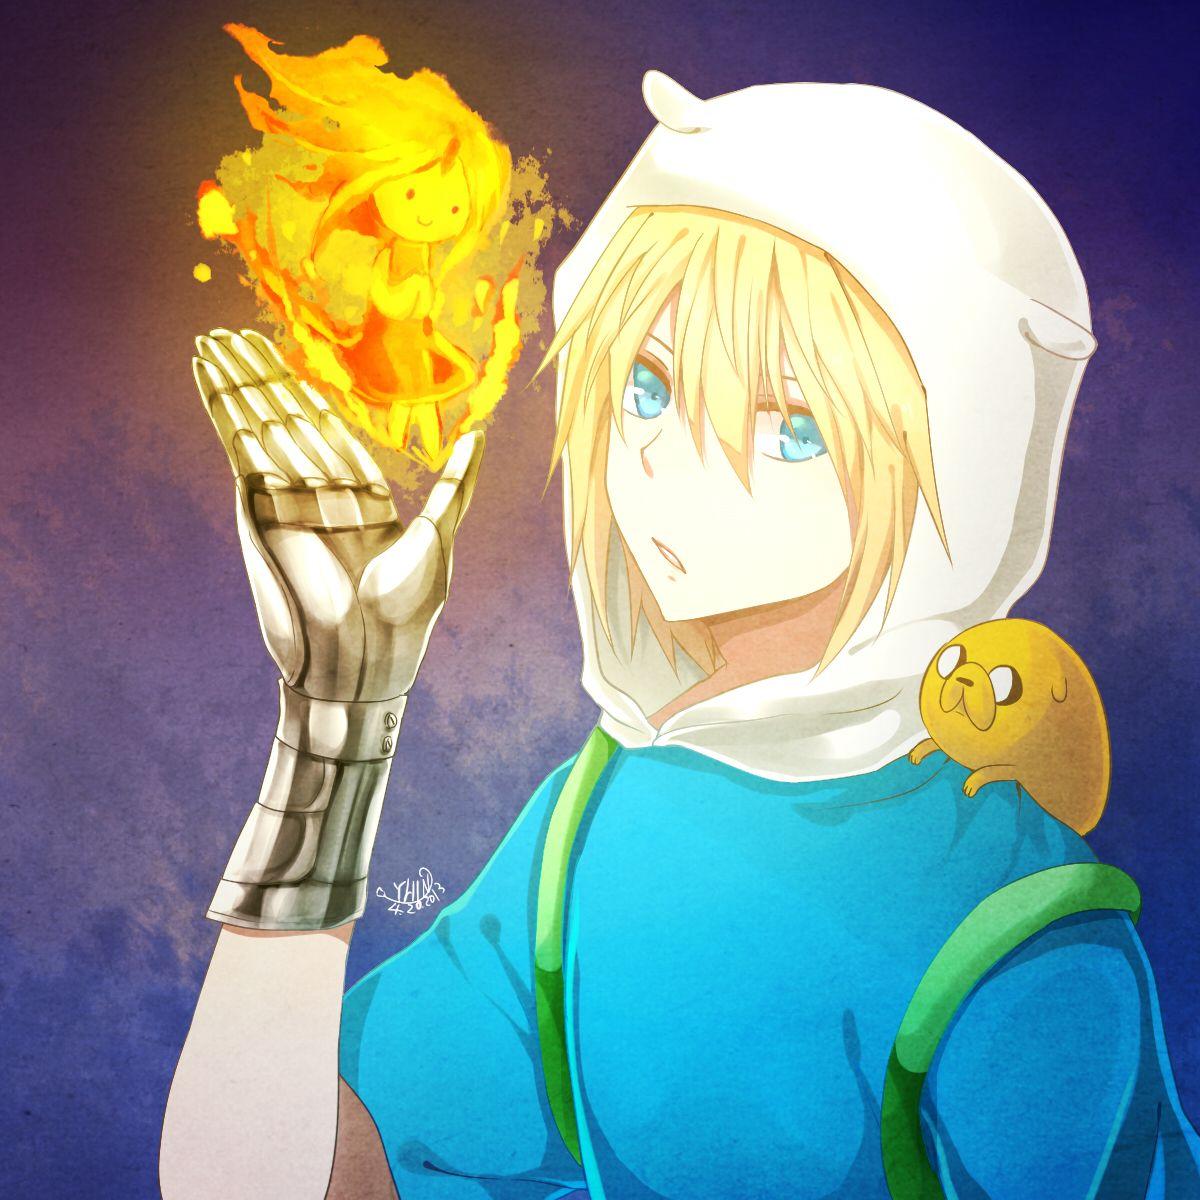 Flame Princess Time Anime Image Board